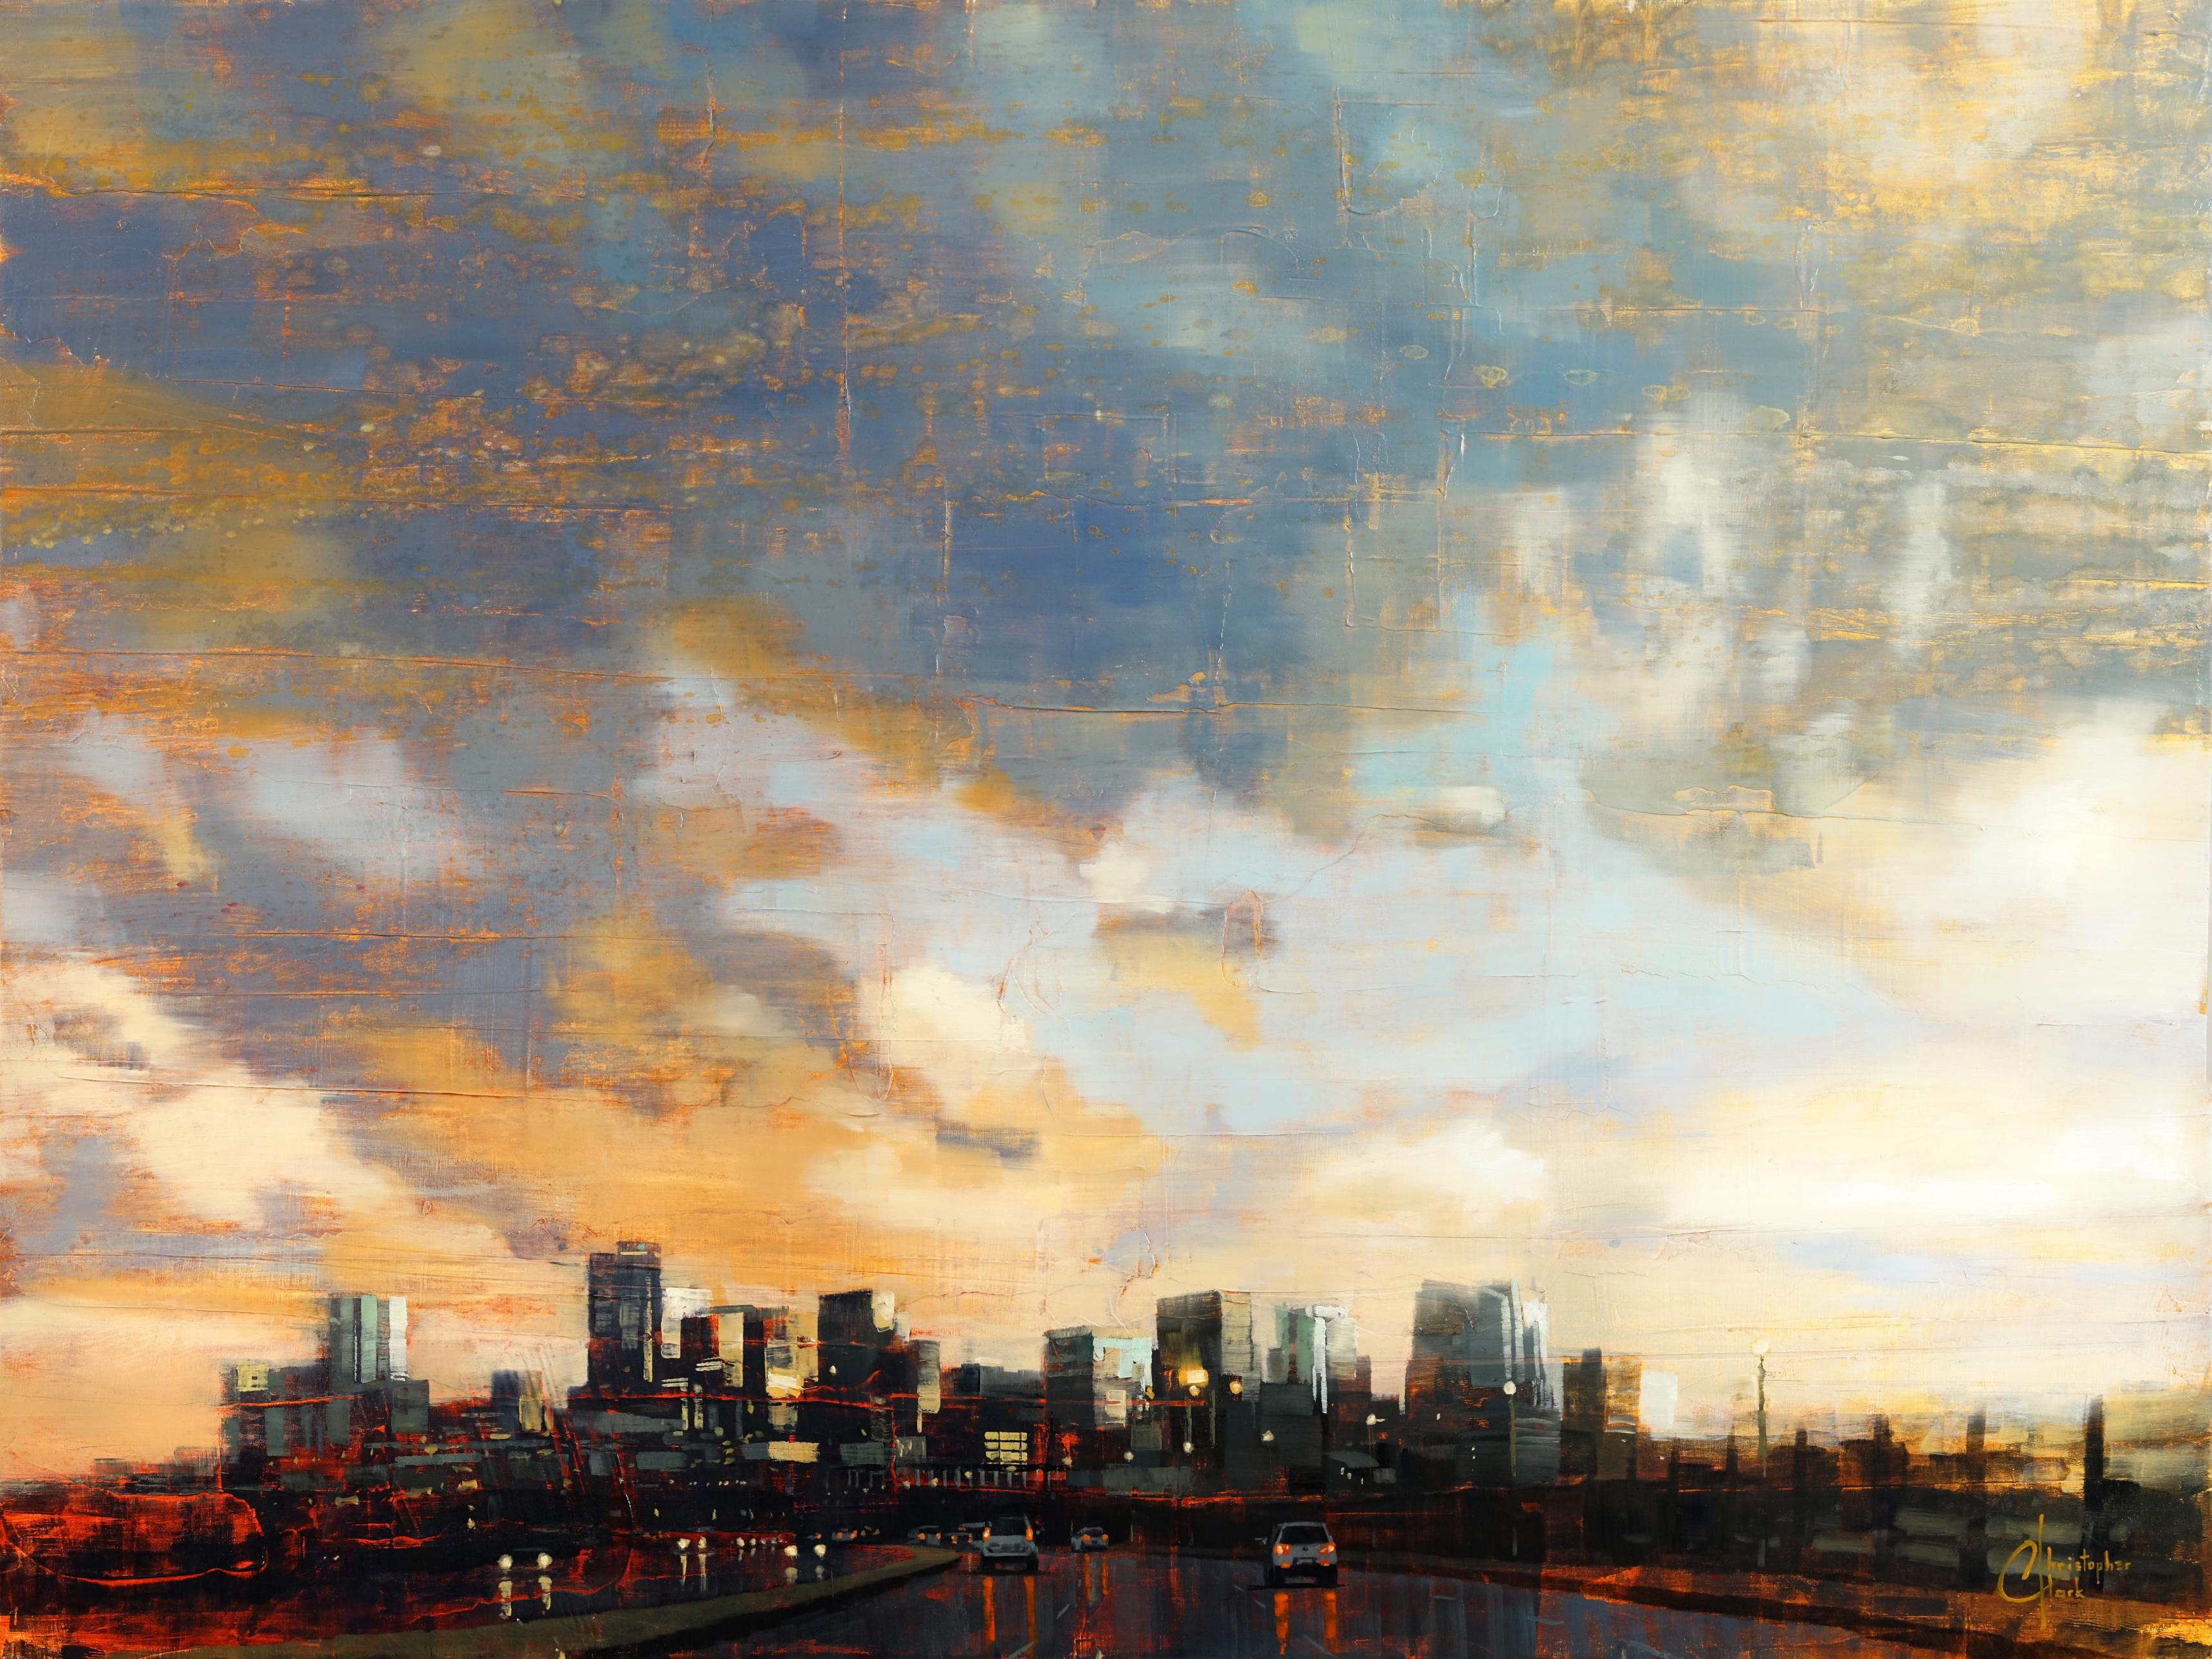 Landscape Painting Christopher Clark - La ligne d'horizon de Denver sous le tempête d'après-midi, peinture à l'huile